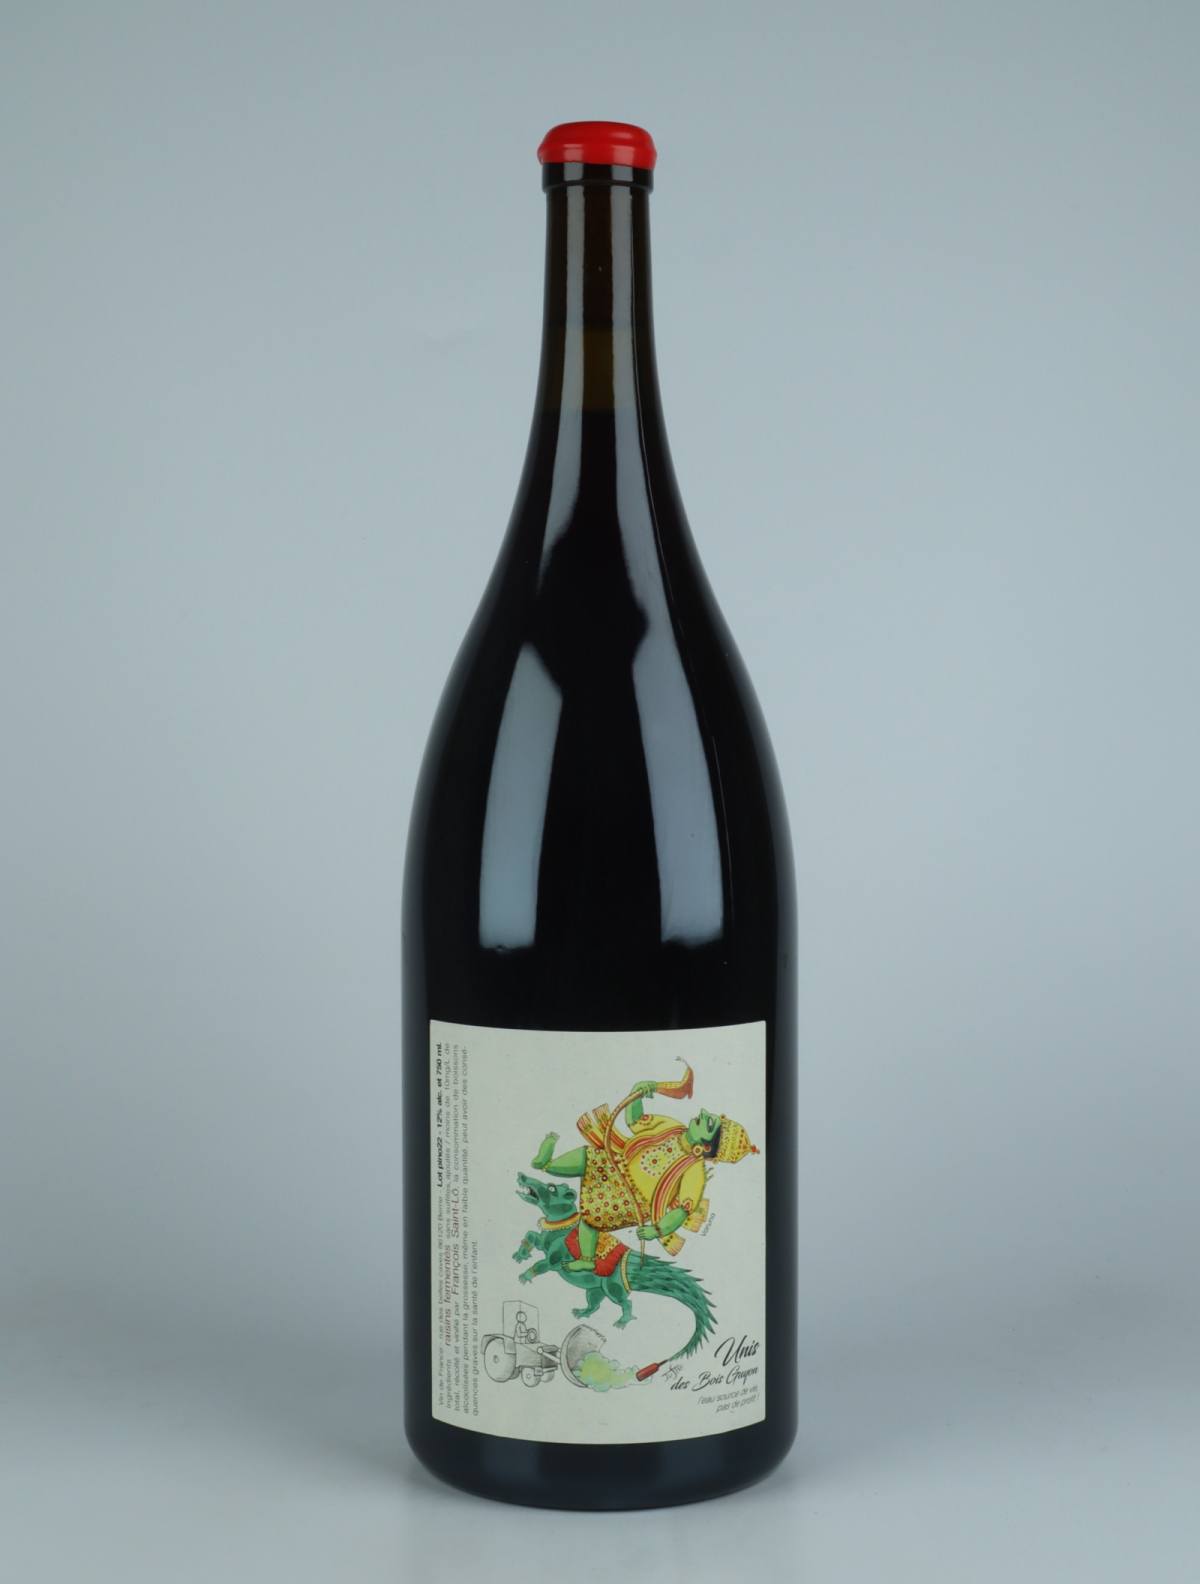 En flaske 2022 Unis des Bois Guyon - Magnum Rødvin fra François Saint-Lô, Loire i Frankrig